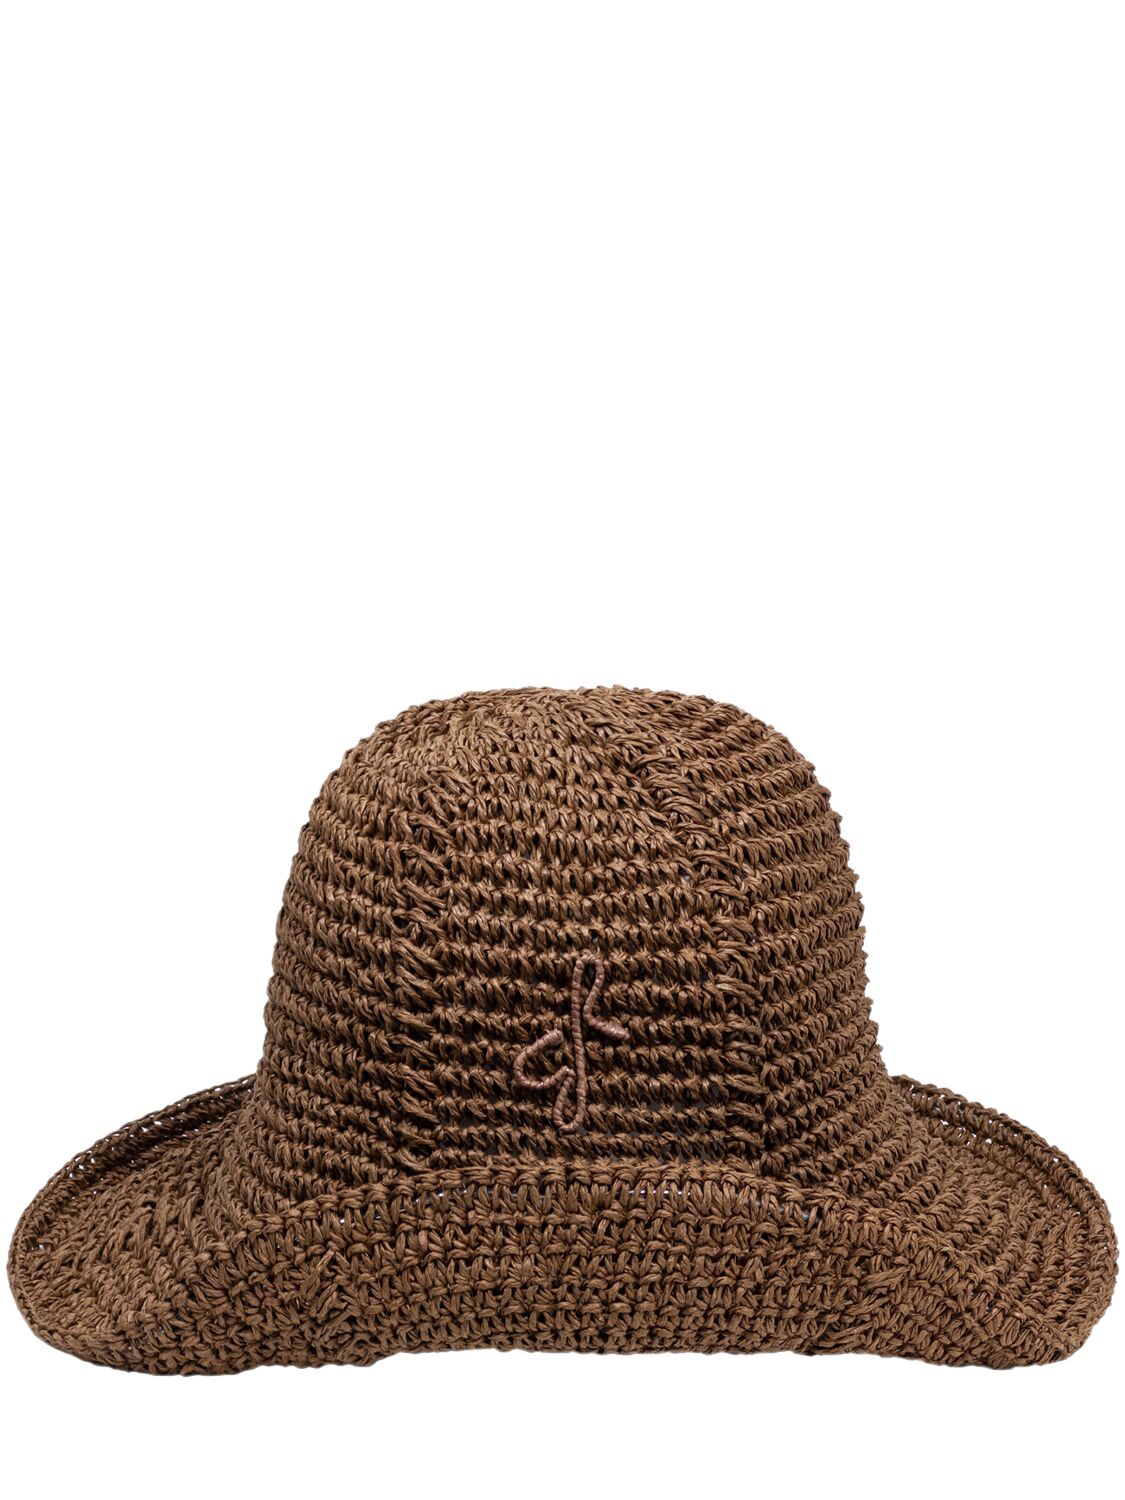 Image of Monogram Embellished Knit Hat